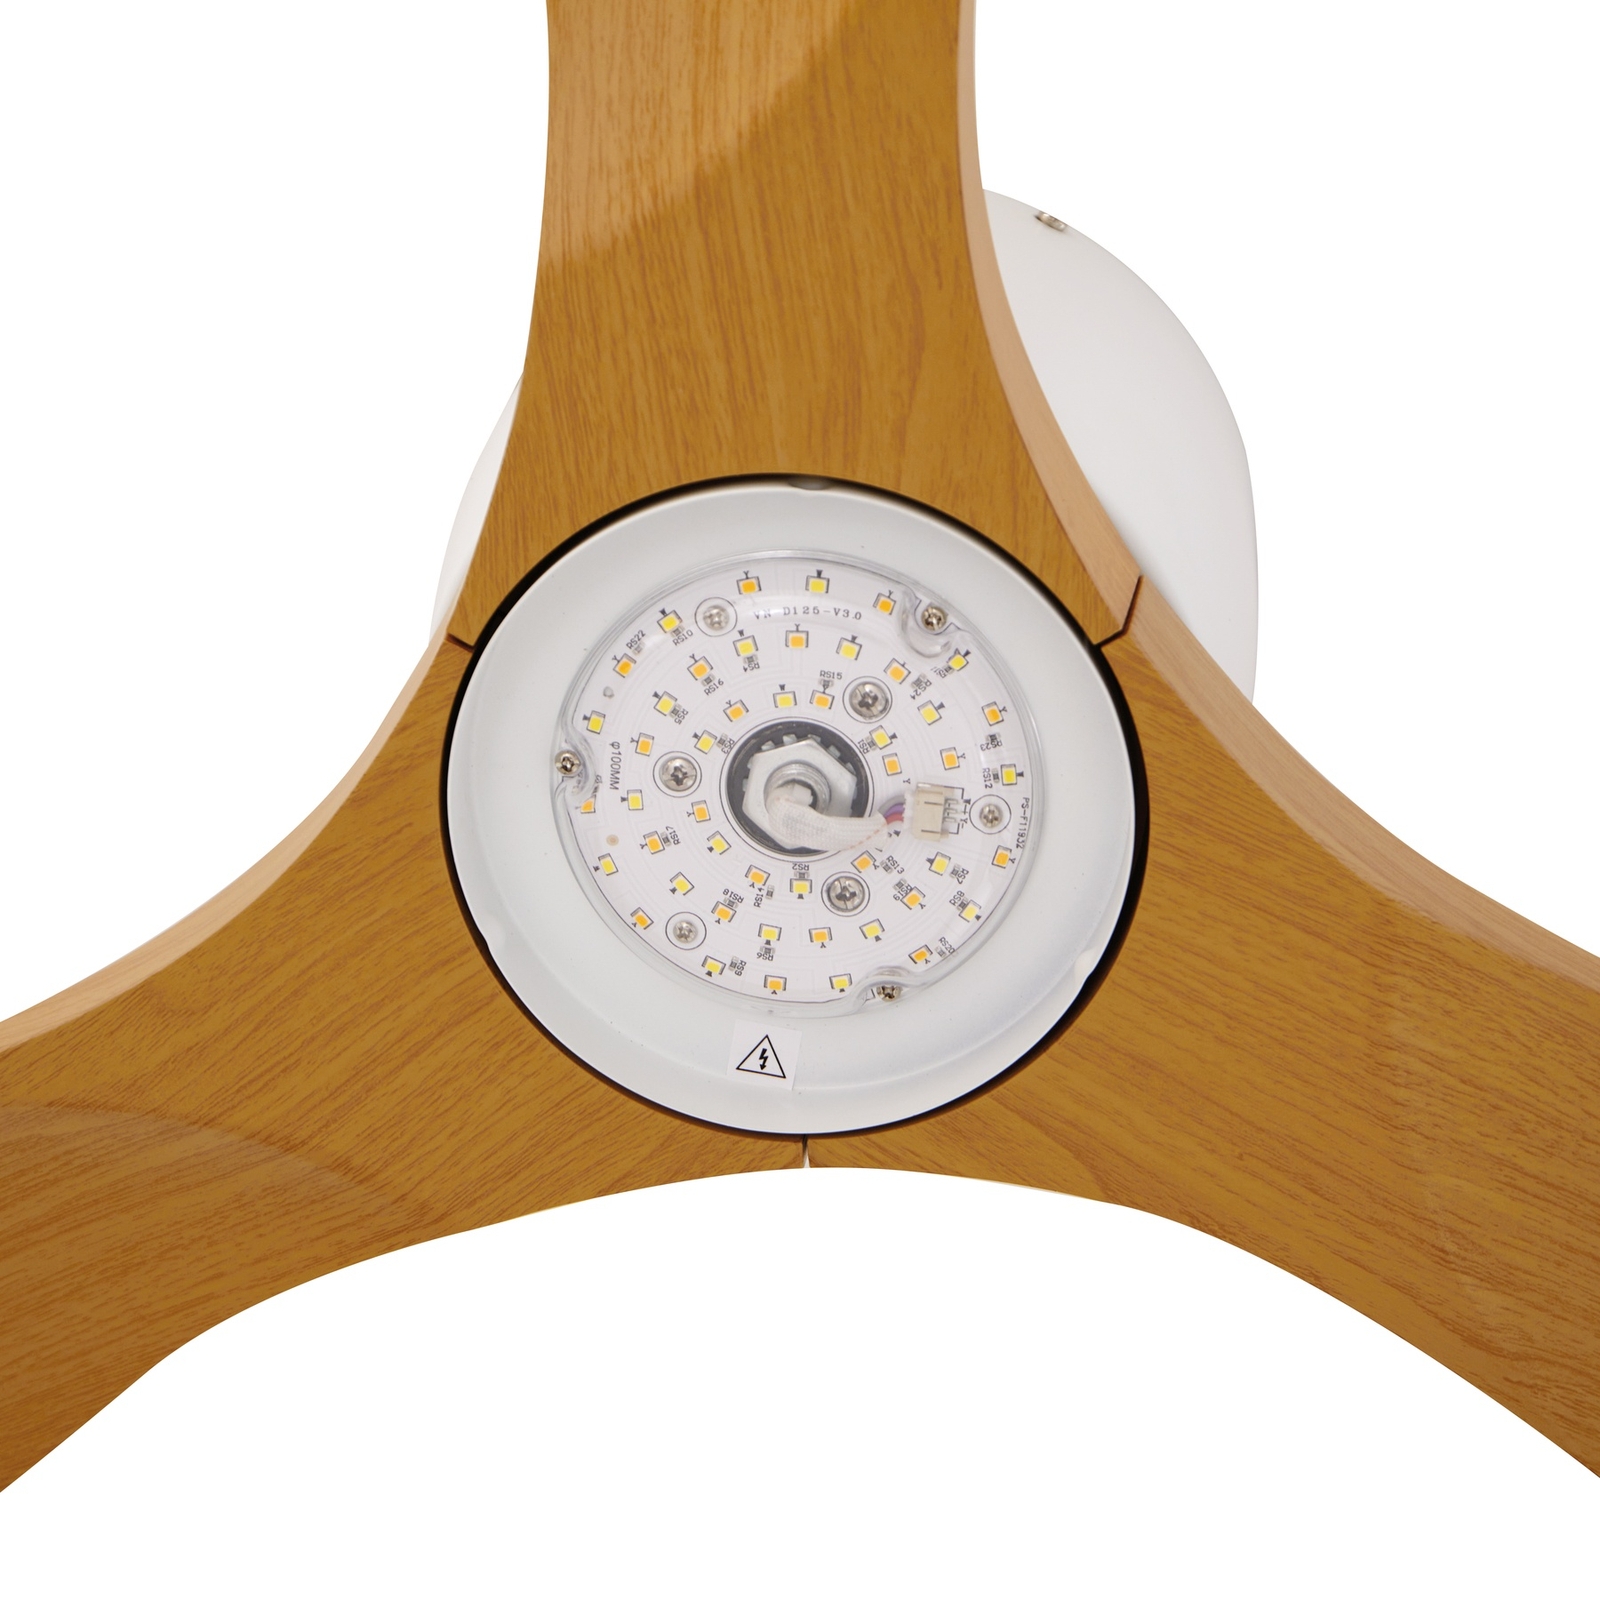 Lucande Ventilateur de plafond LED Moneno blanc/couleur bois DC silencieux